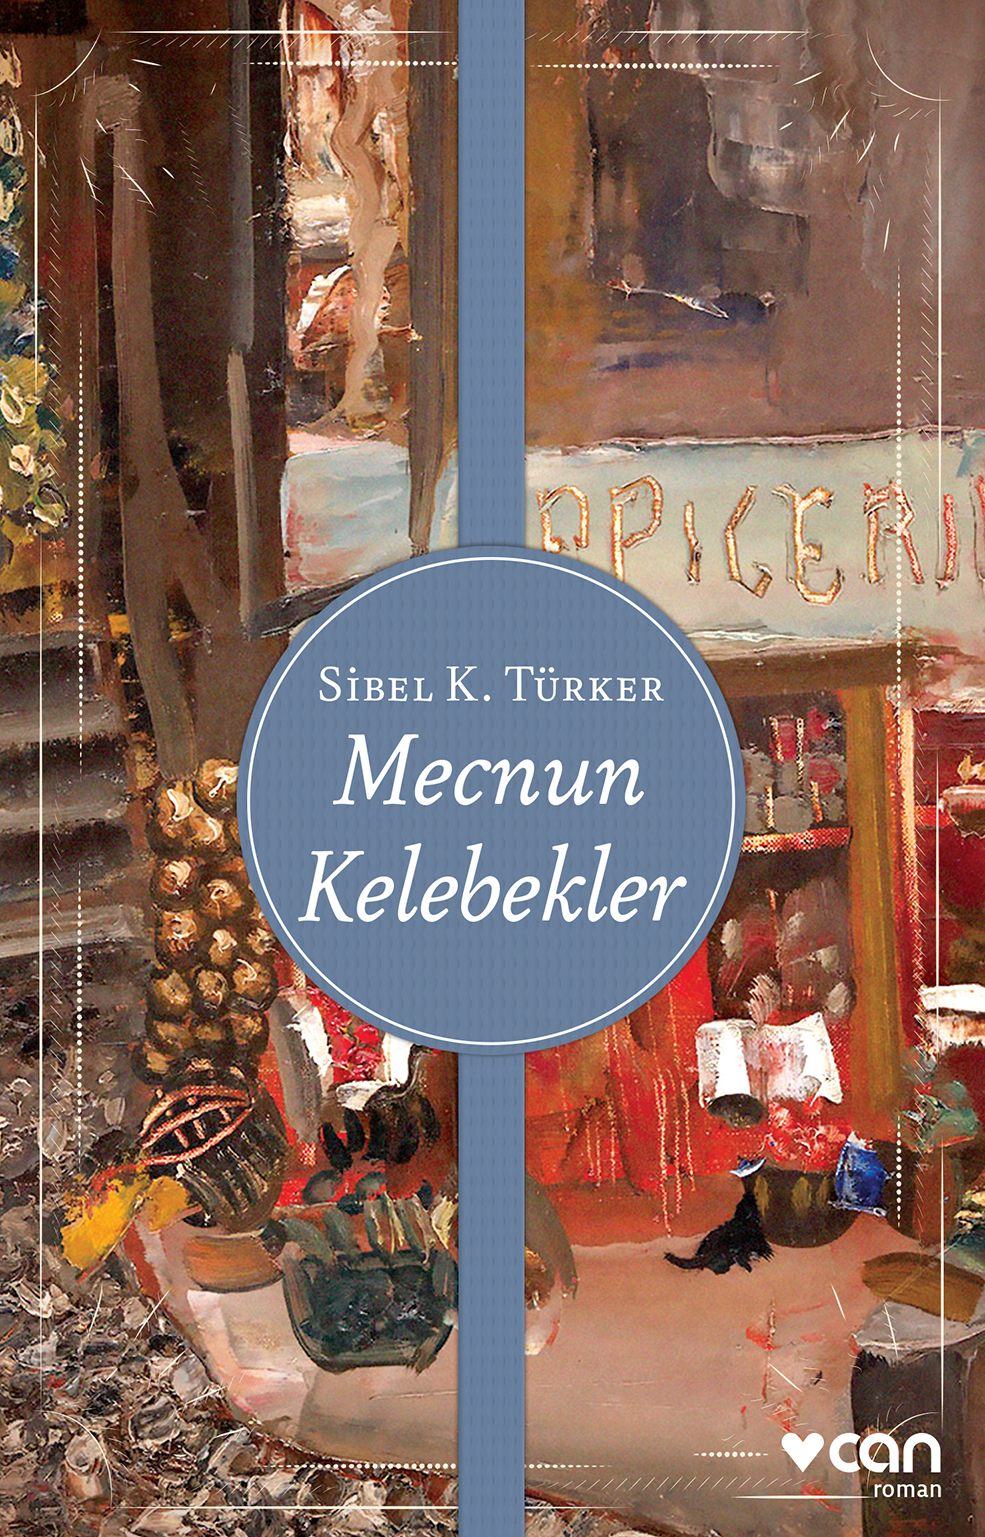 Mecnun Kelebekler, Sibel K. Türker, Can Yayınları